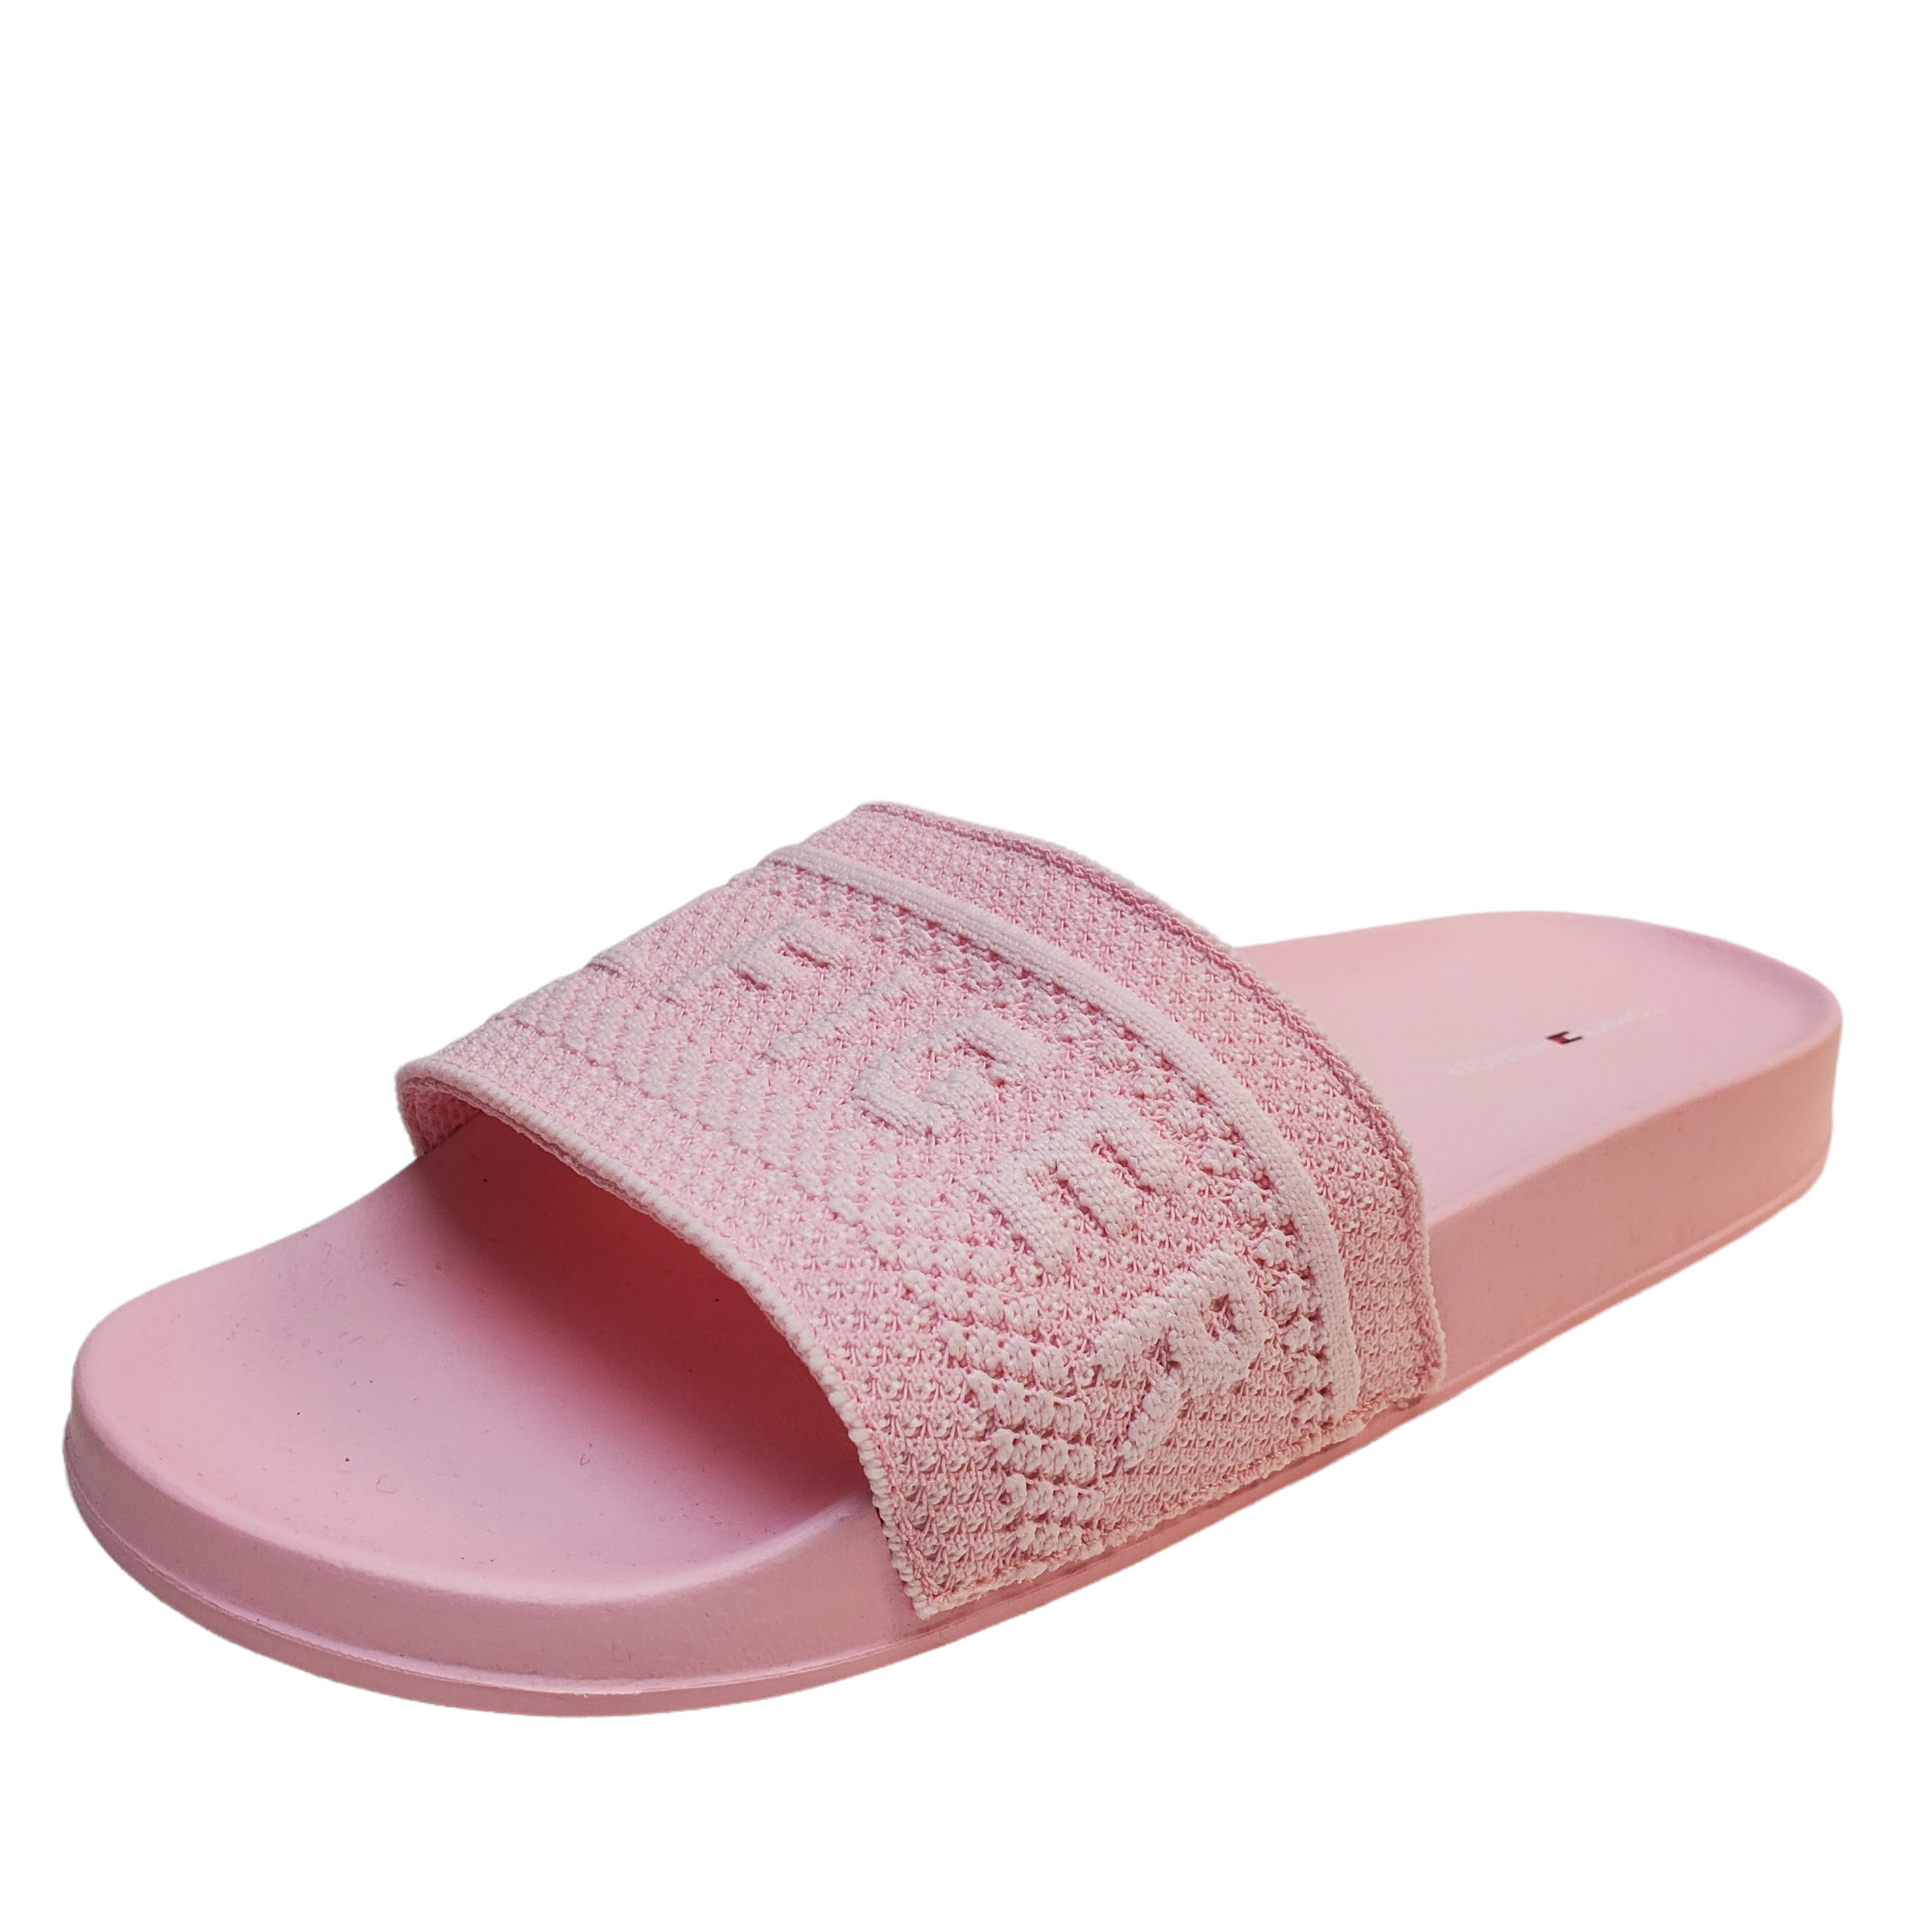 Tommy Hilfiger Womens Shoes Dollop Slip On Slide Sandals 9M Light Pink Affordable Designer Brands Affordable Brands